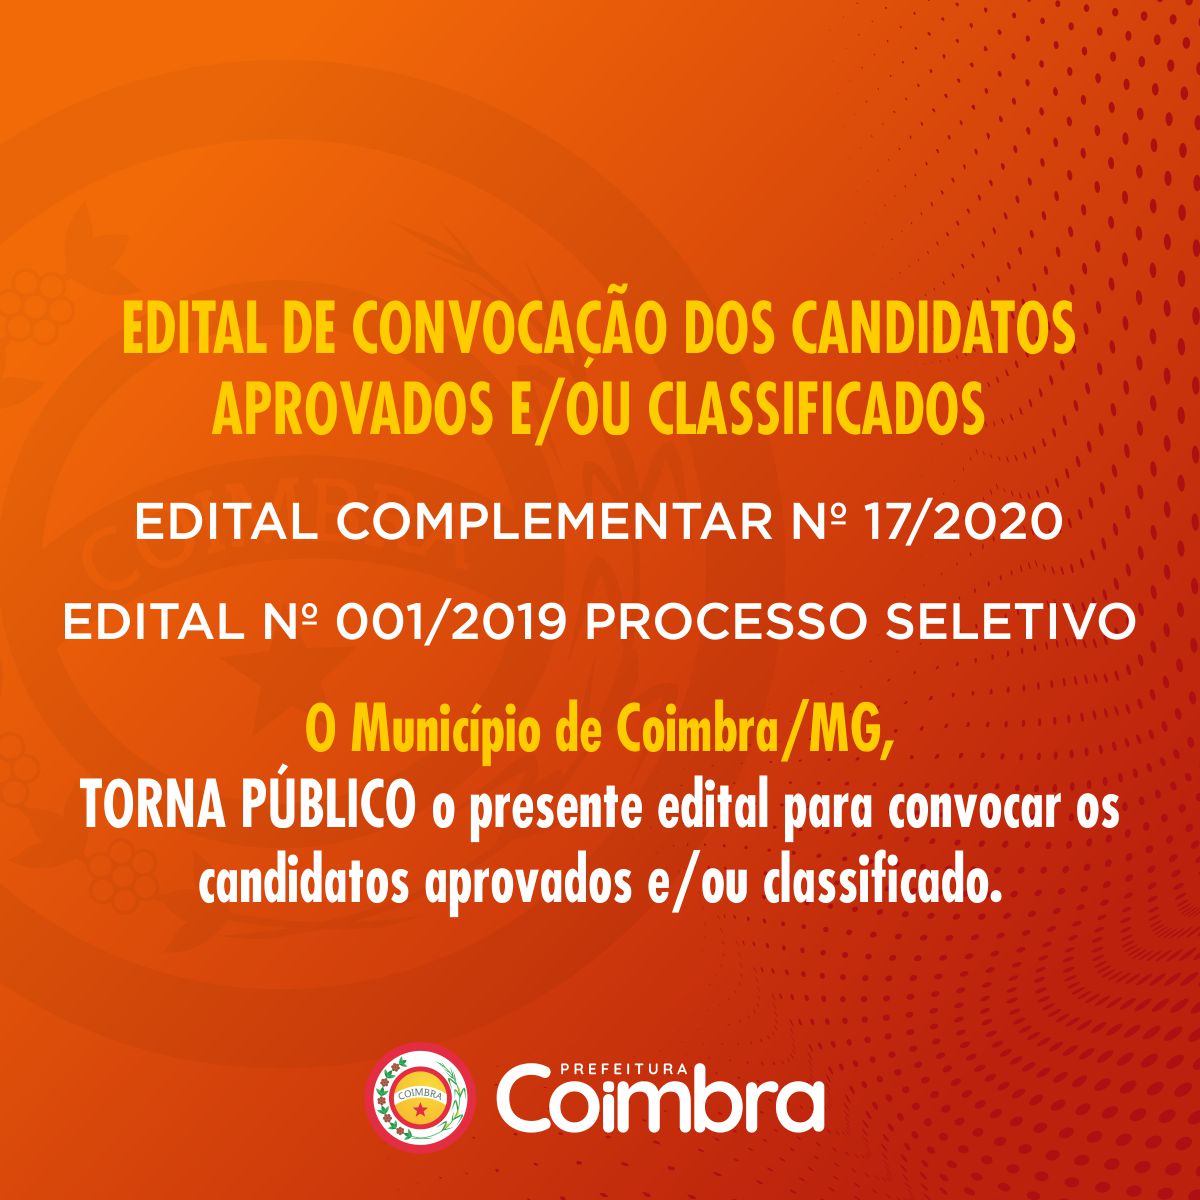 PREFEITURA DE COIMBRA_edital-complementar_2